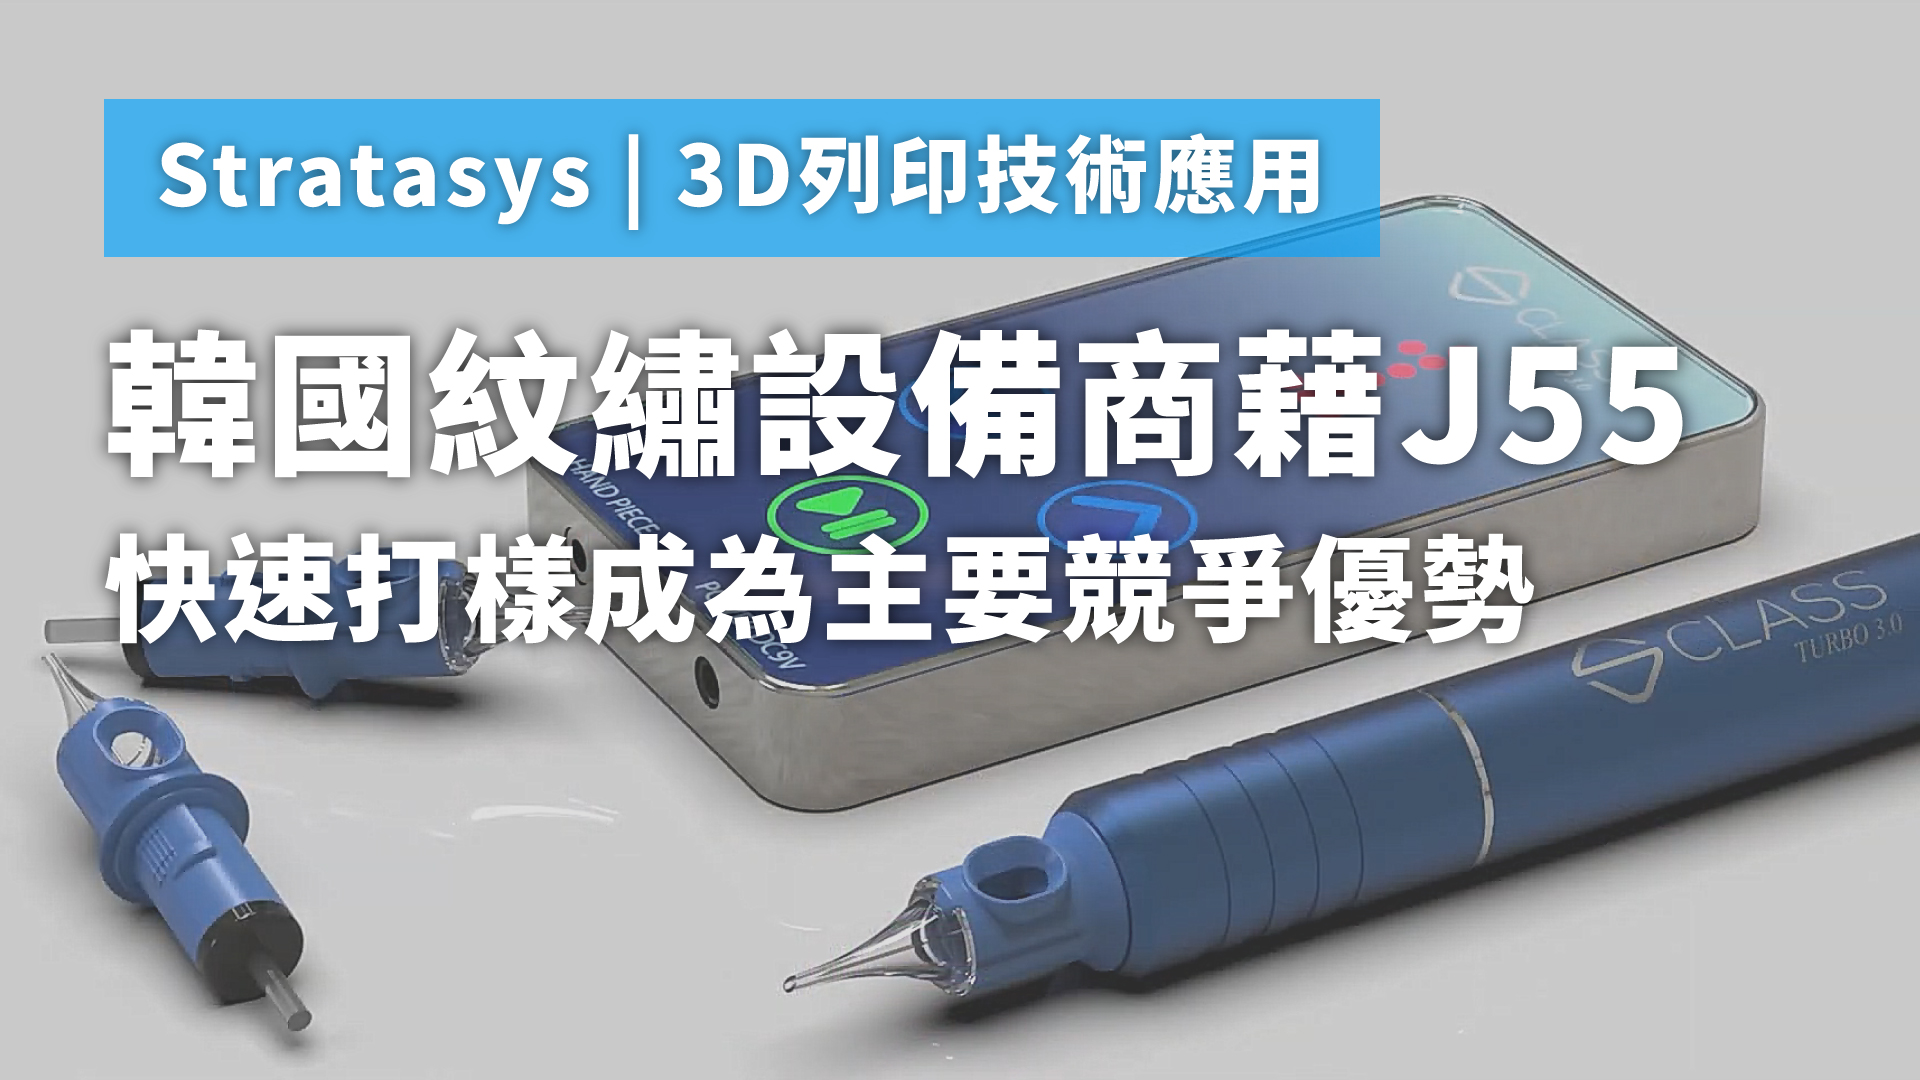 韓國紋繡設備商藉J55快速打樣成為主要競爭優勢